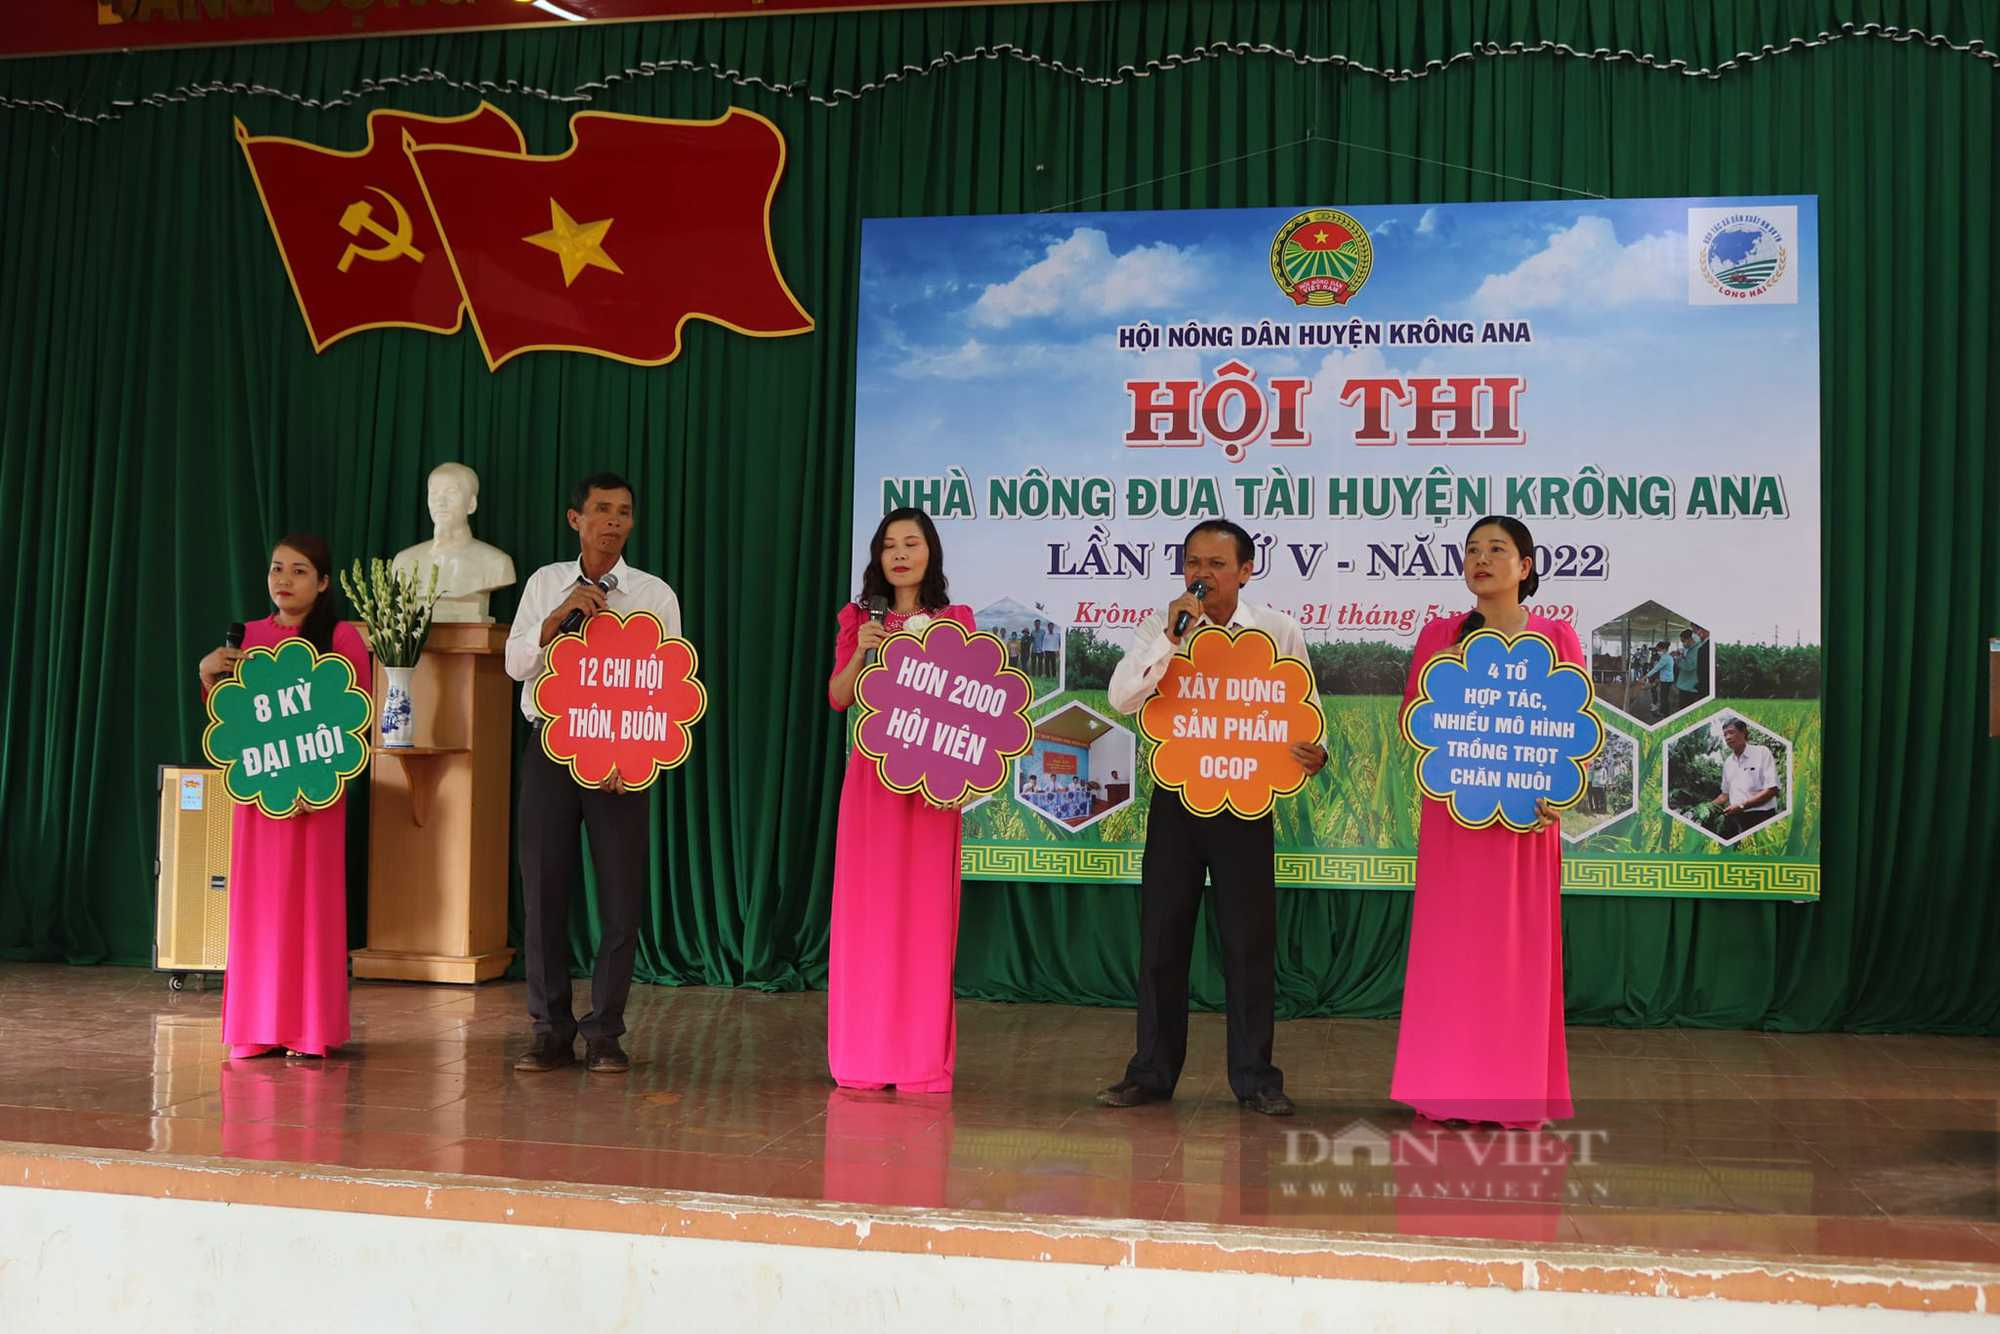 Đắk Lắk: Sôi nổi hội thi nhà nông đua tài tại huyện Krông Ana  - Ảnh 1.